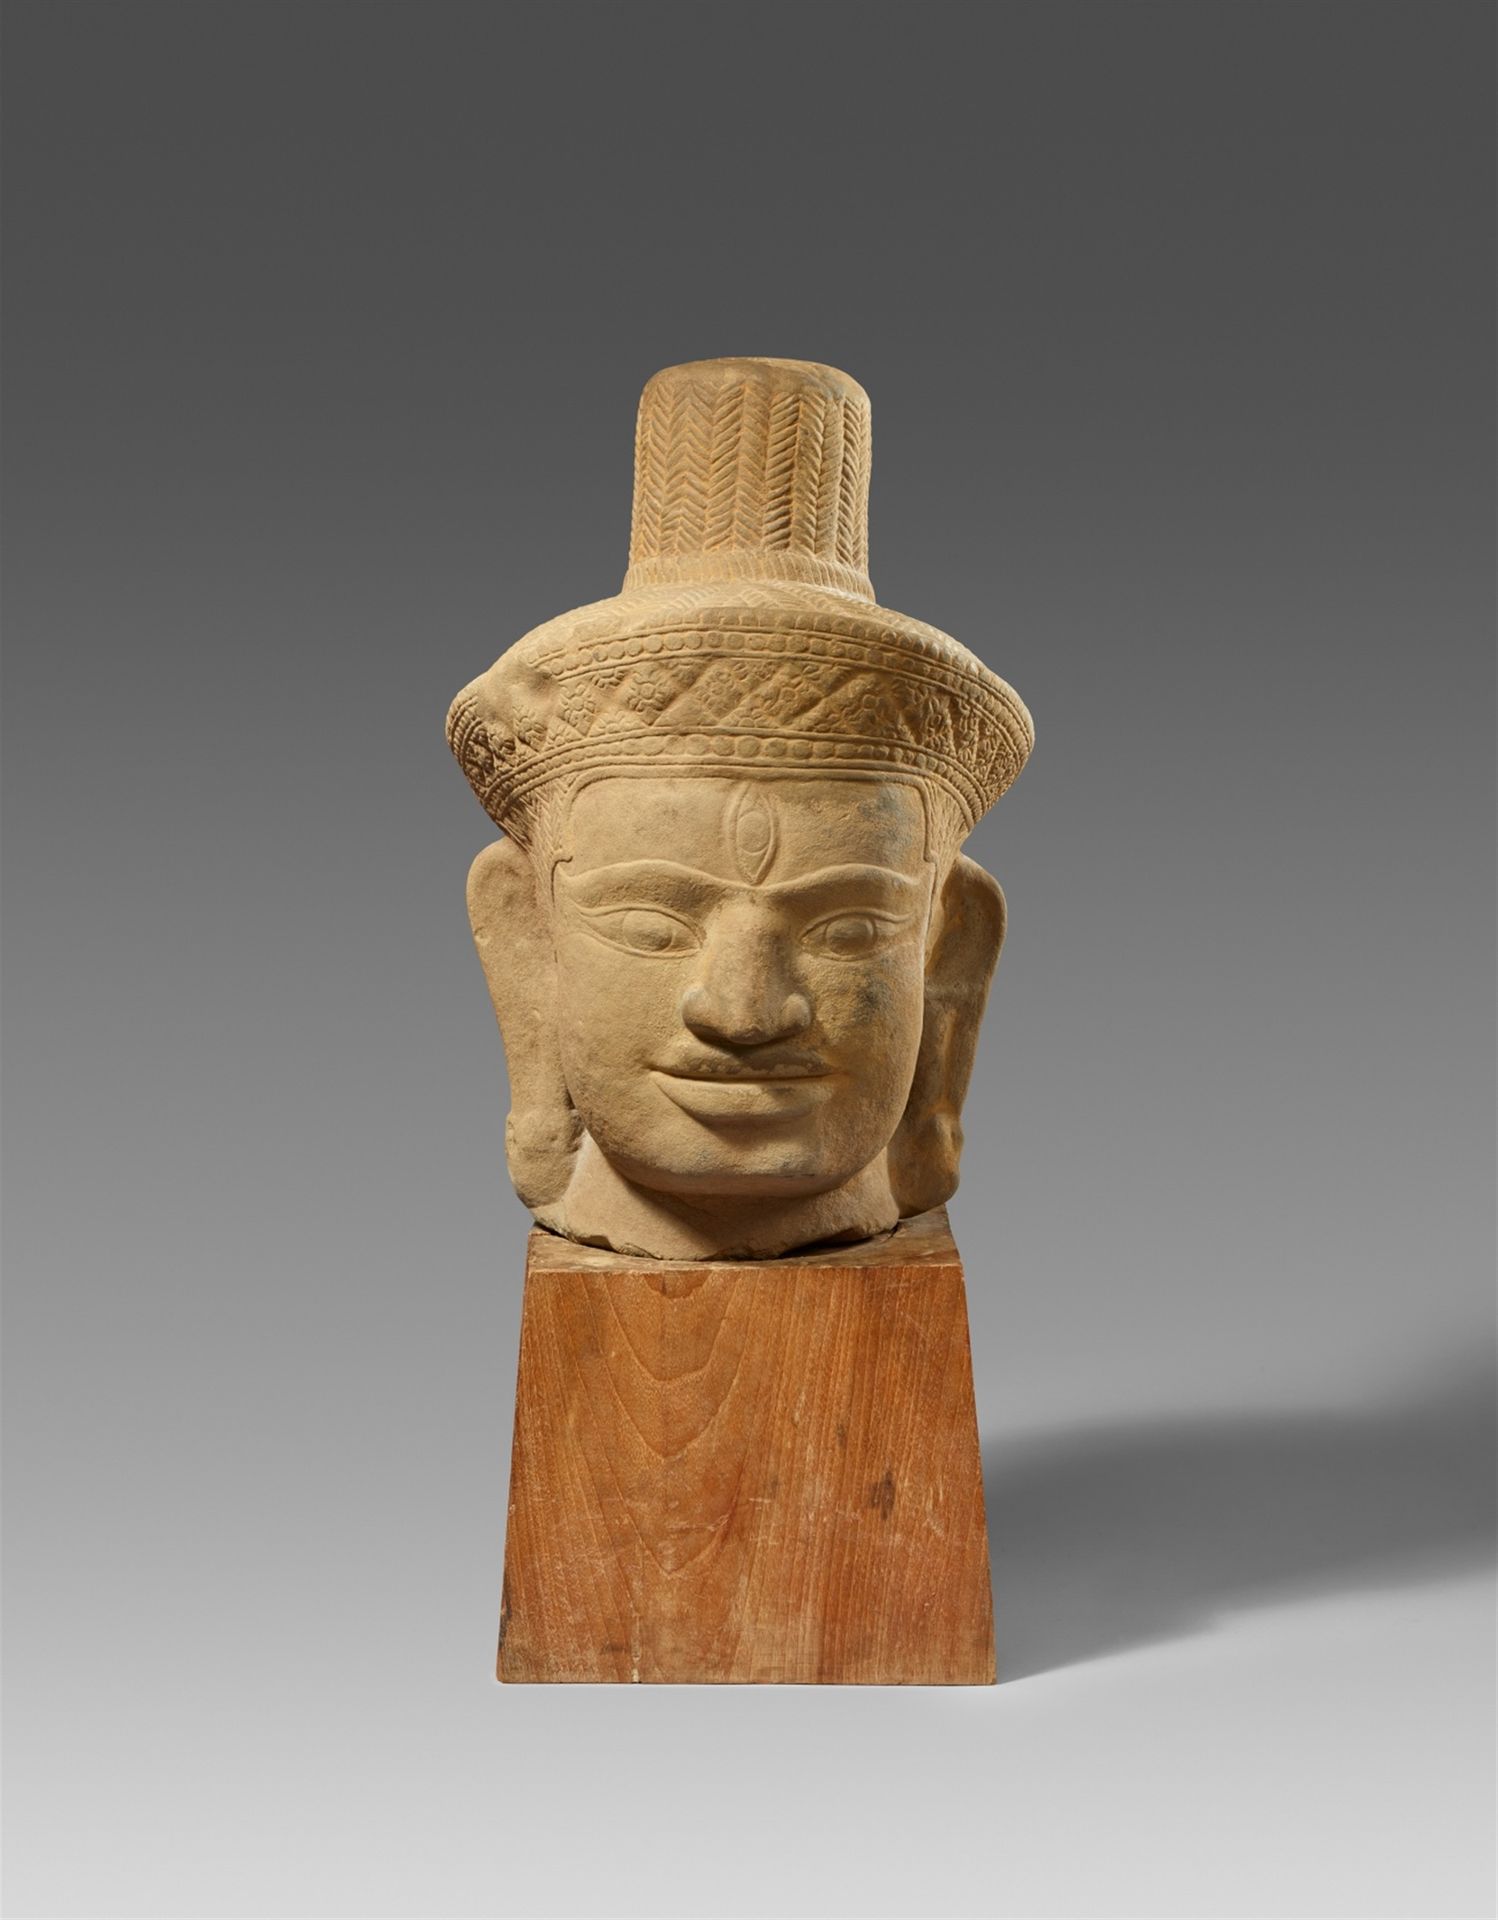 Null 非常大的湿婆头像。柬埔寨。10世纪或以后。



巨大的、几乎是方形的头部，有头饰和覆盖在头部和穆库塔上的辫子丝线。额头上有一只巨大的第三只眼睛，这是&hellip;